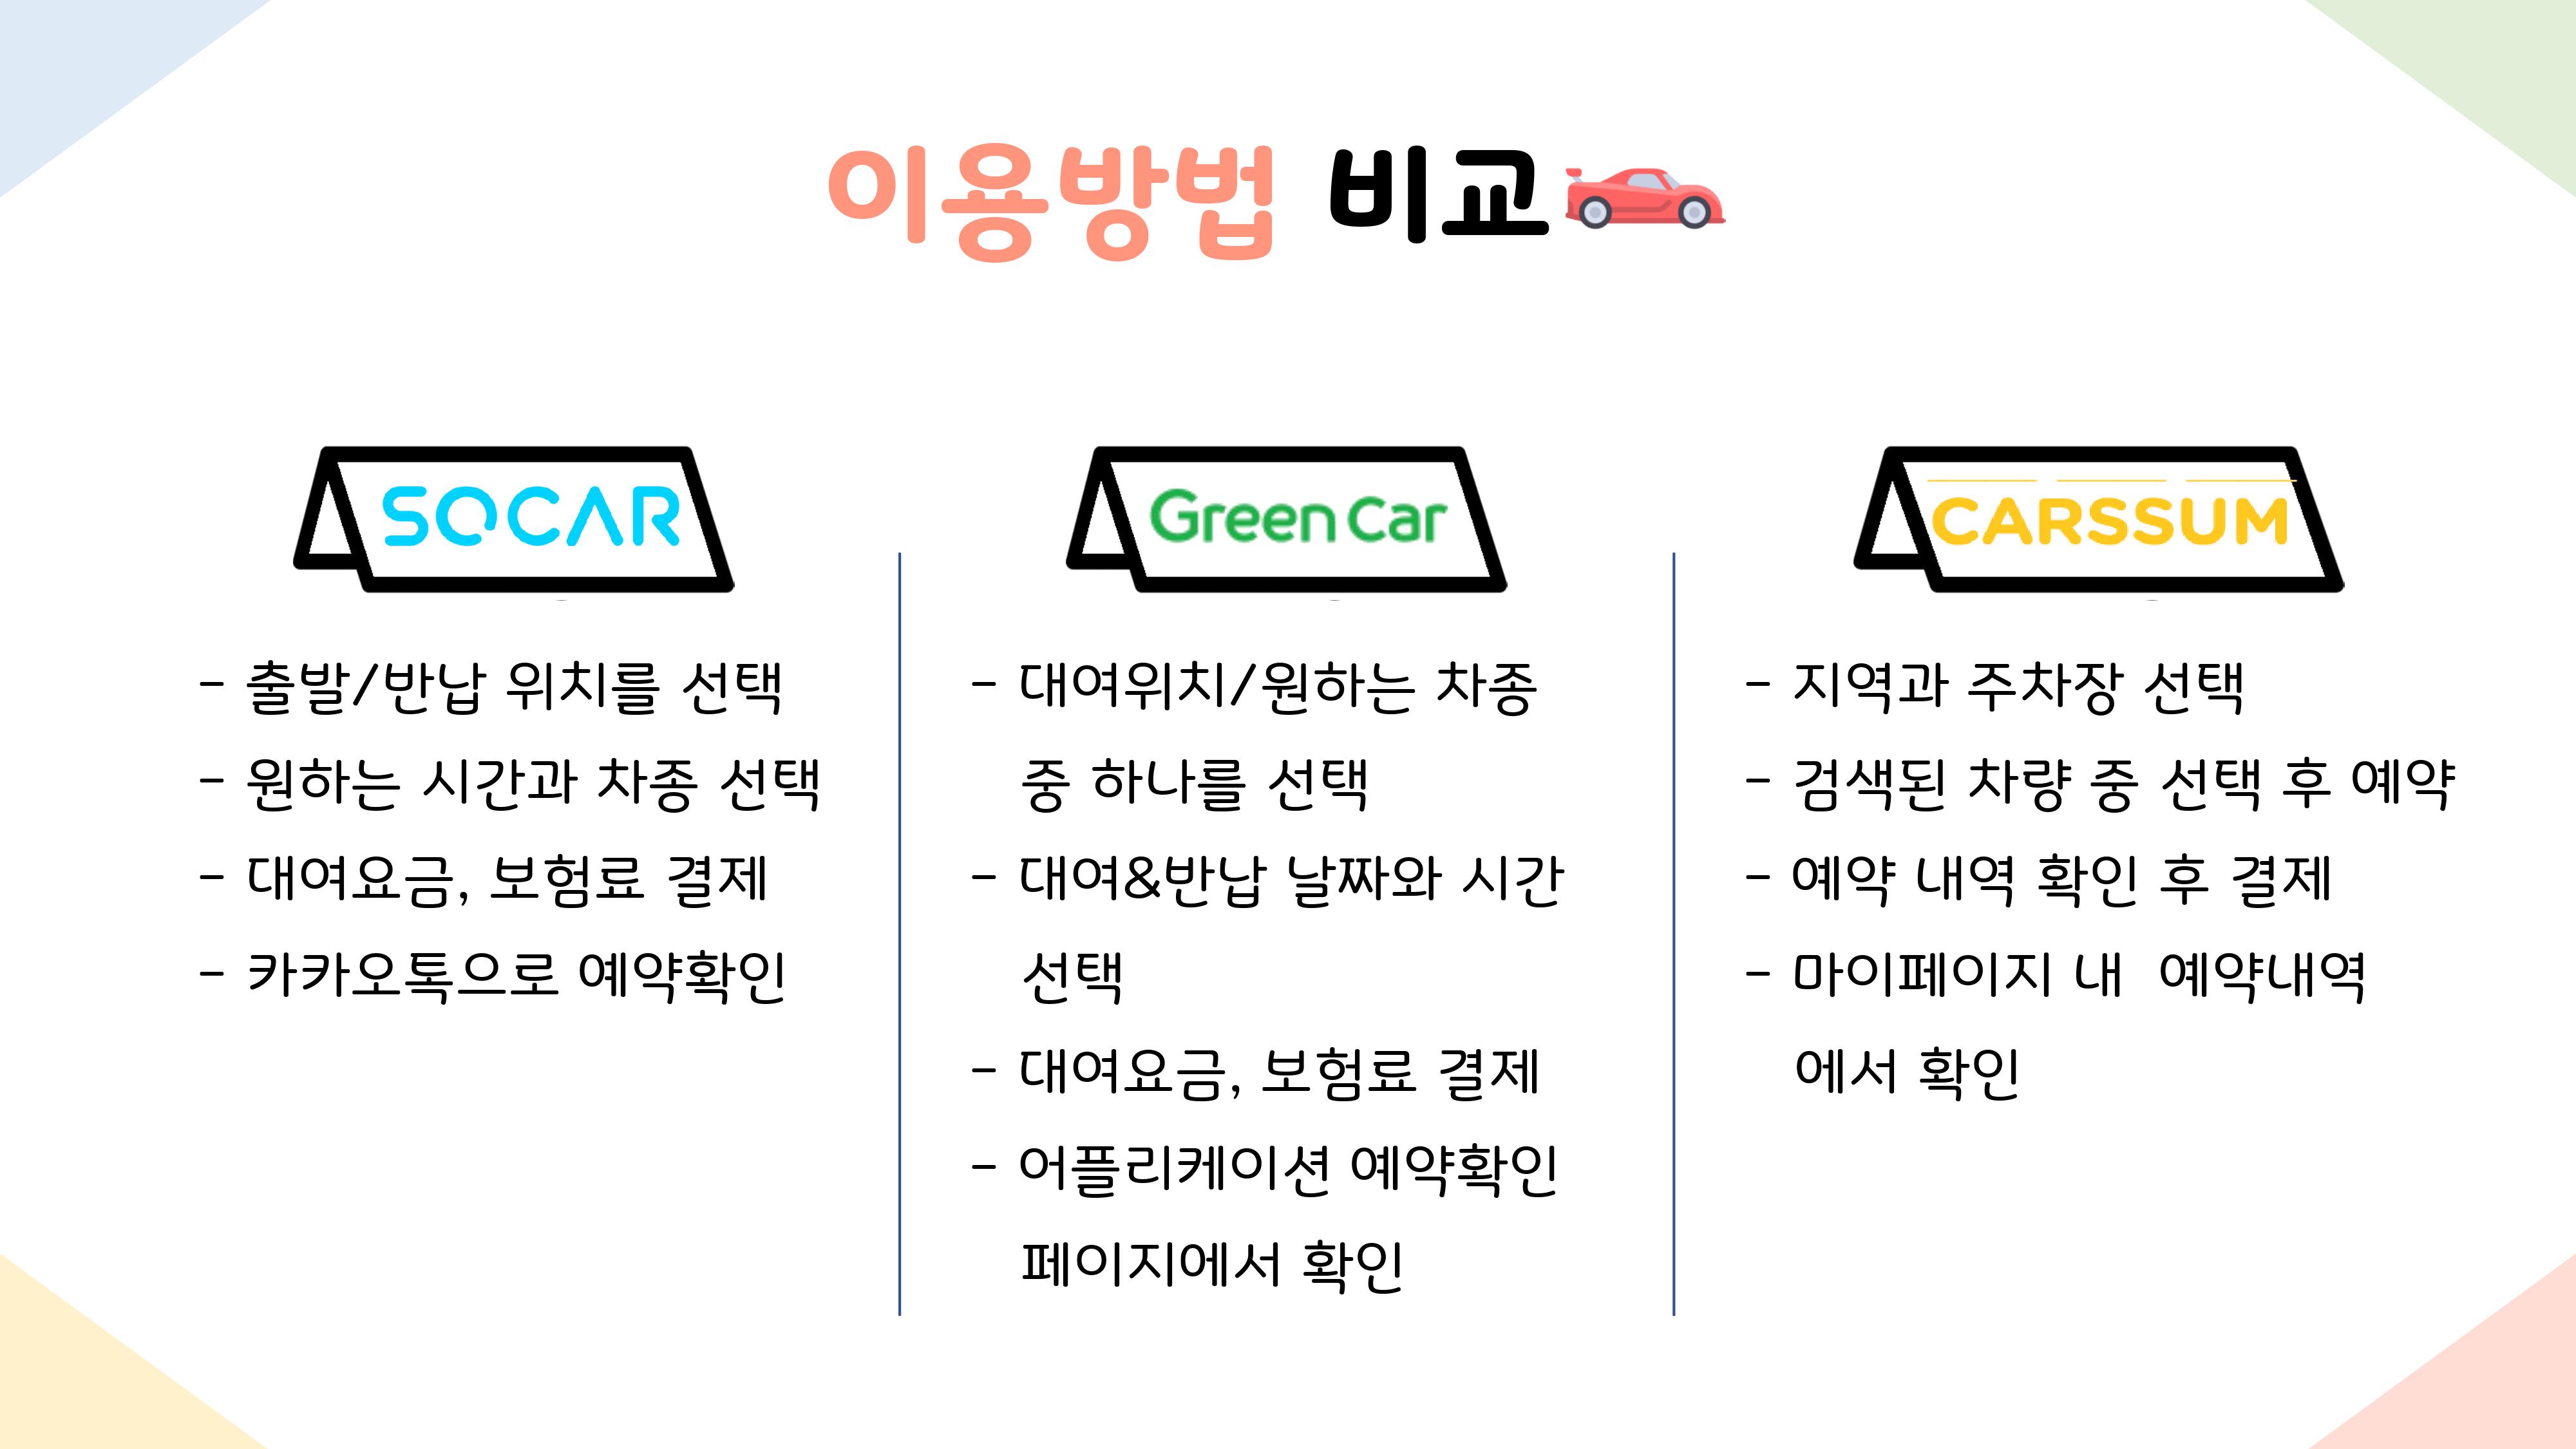 이용방법 비교 SOCAR -출발/반납 위치를 선택 -원하는 시간과 차종 선택 -대여요금, 보험료 결제 카카오톡으로 예약확인  Green Car -대여위치/원하는 차종 중 하나를 선택 -대여&반납 날짜와 시간 선택 -대여요금, 보험료 결제 -어플리케이션 예약확인 페이지에서 확인  CARSSUM -지역과 주차장 선택 -검색된 차량 중 선택 후 예약 -예약 내역 확인 후 결제 -마이페이지 내 예약내역에서 확인  